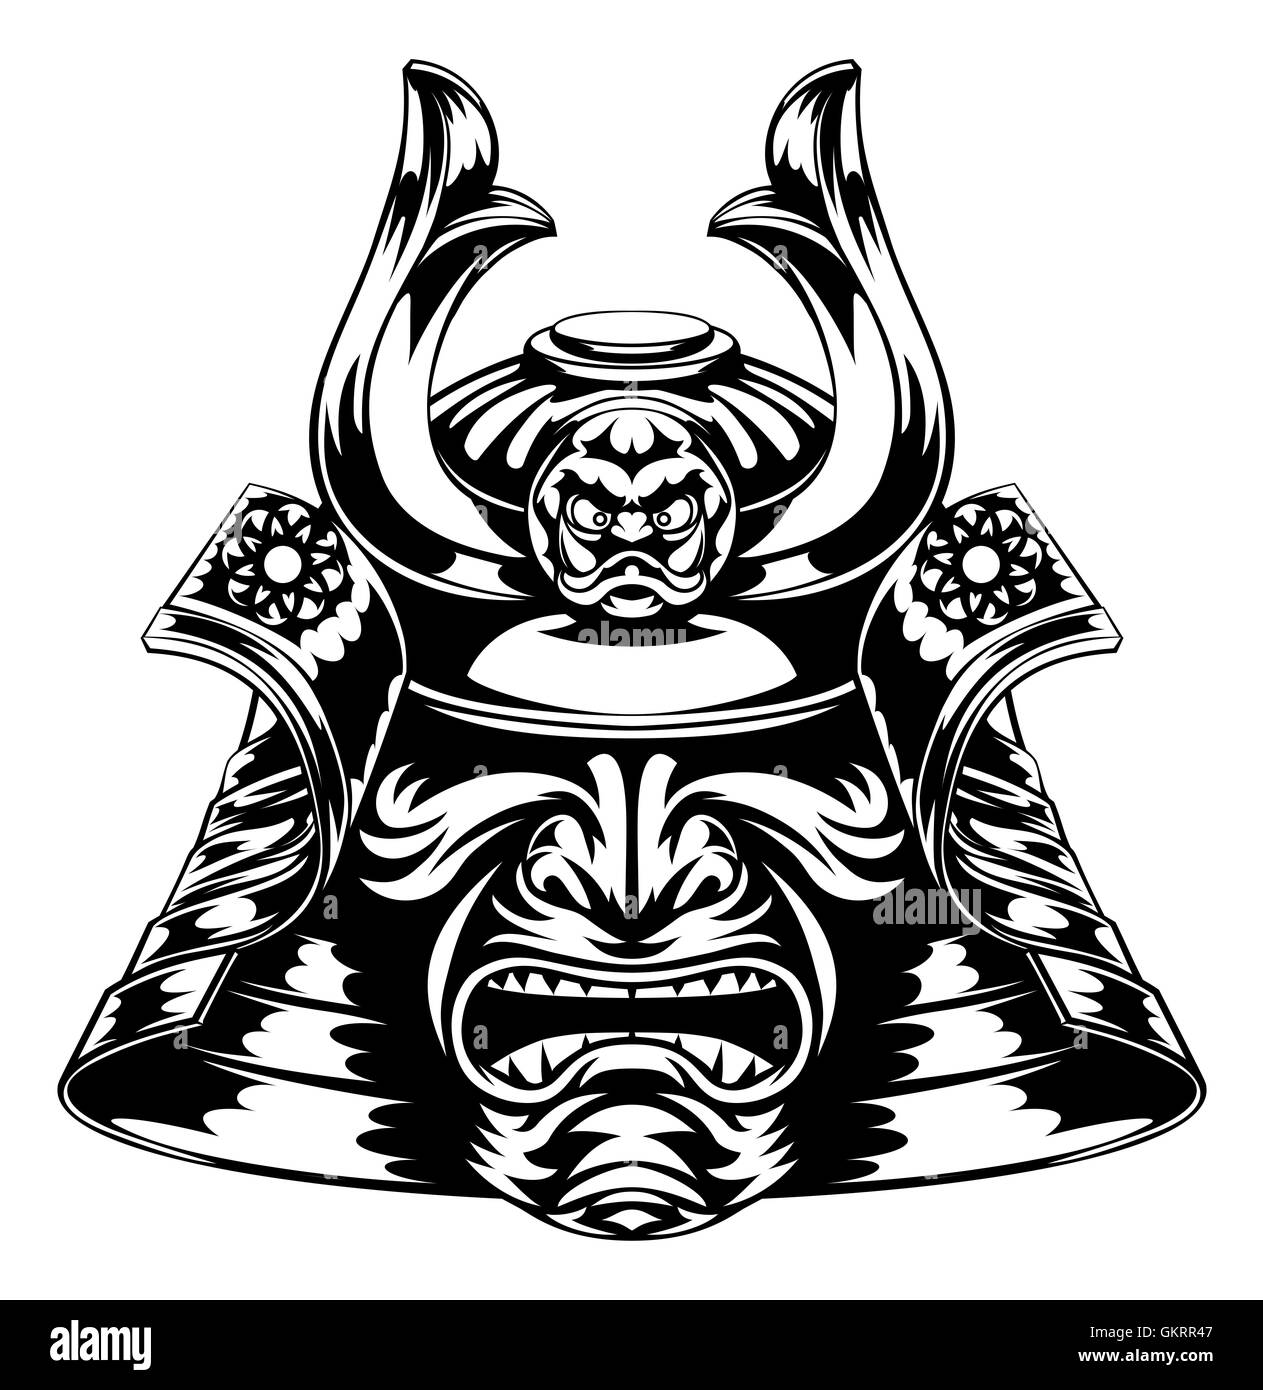 Eine japanische Samurai-Maske und Helm-illustration Stockfoto